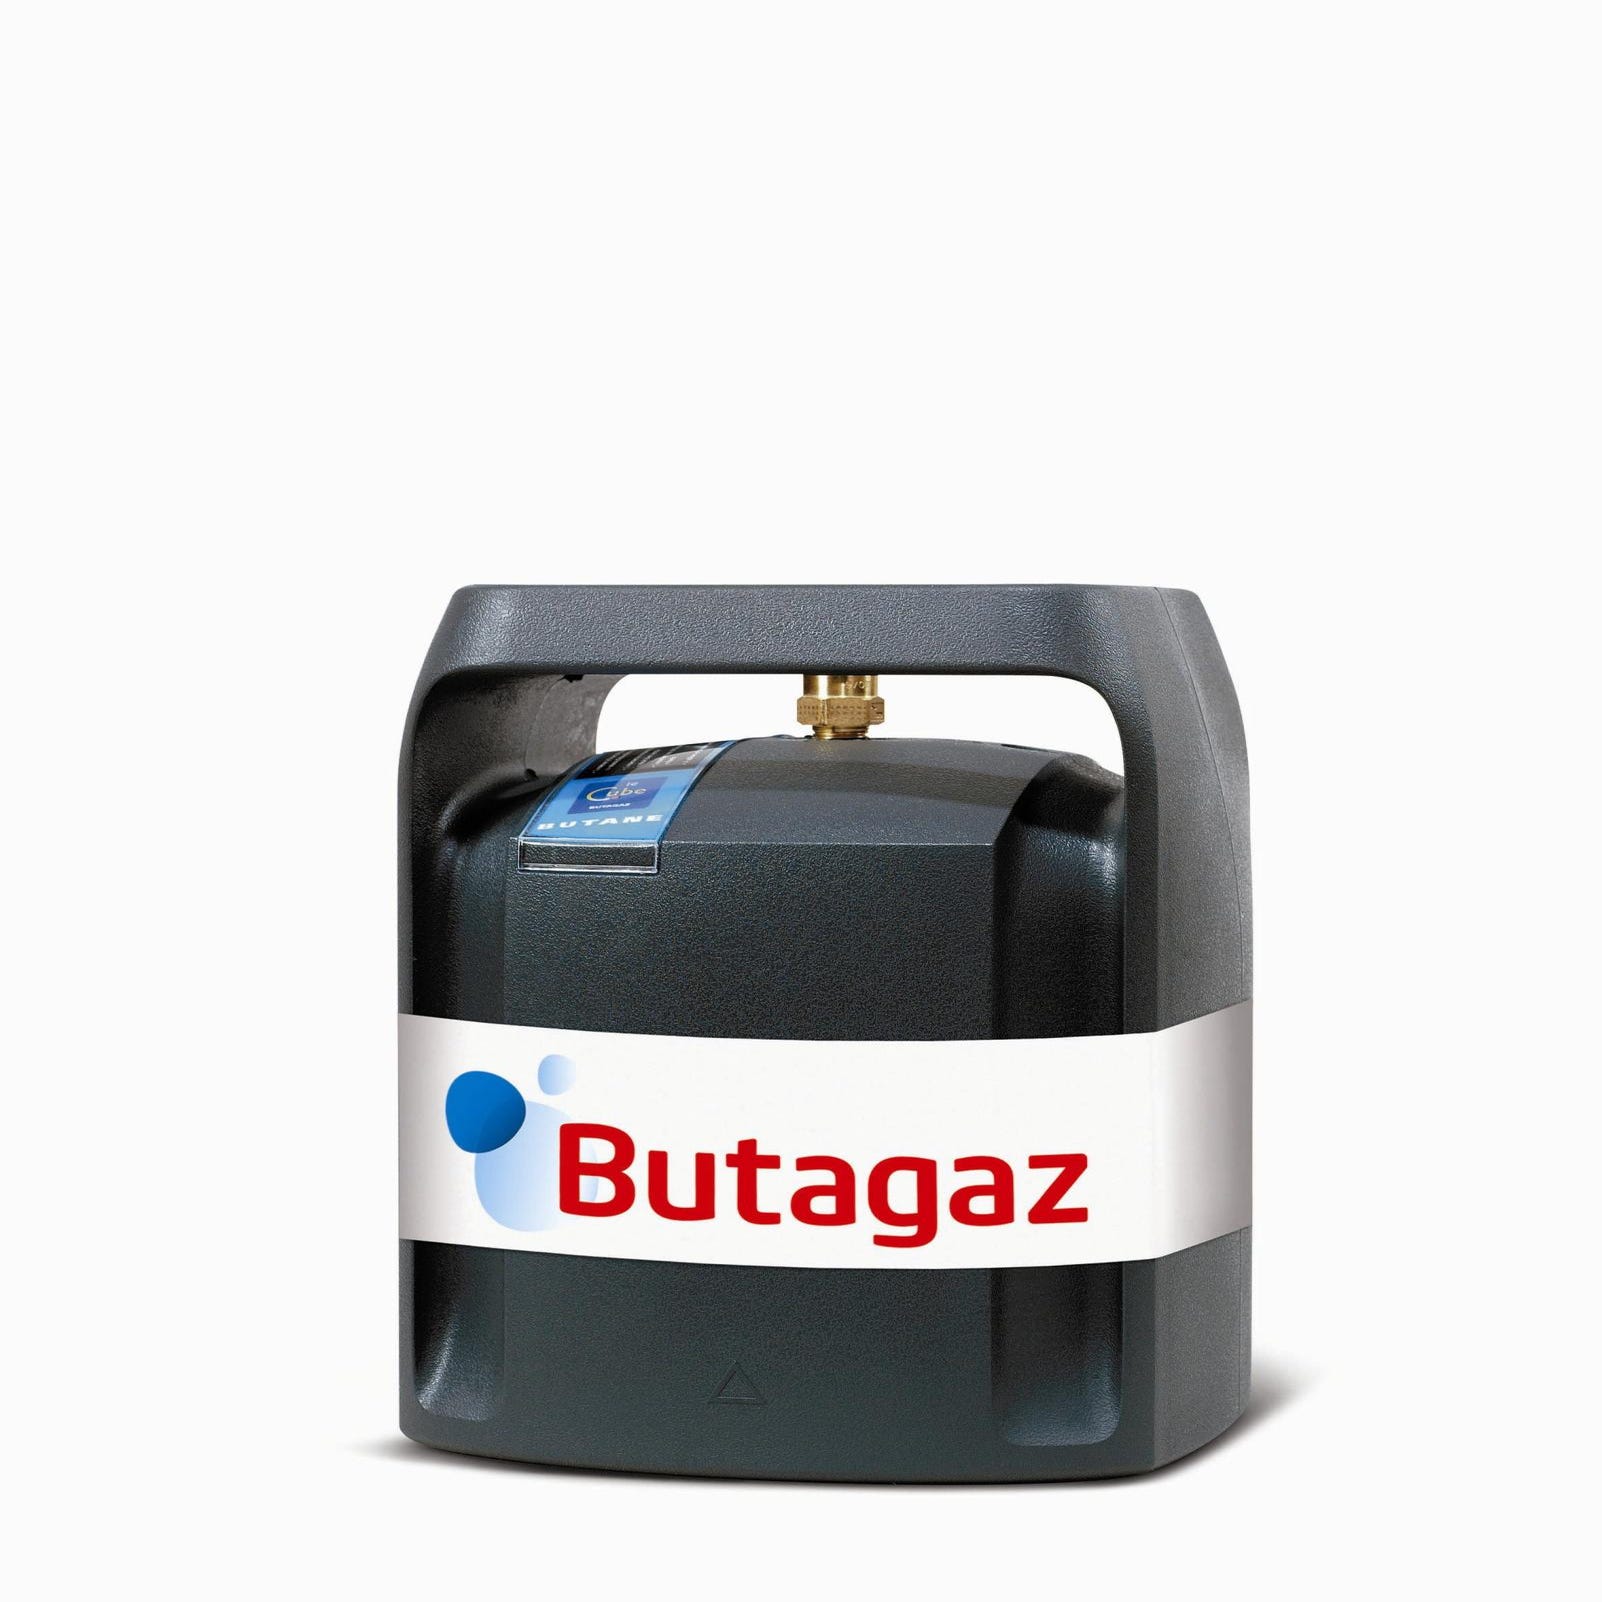 Bouteille de gaz butane 10 Kg CARREFOUR : la bouteille de 10 kg à